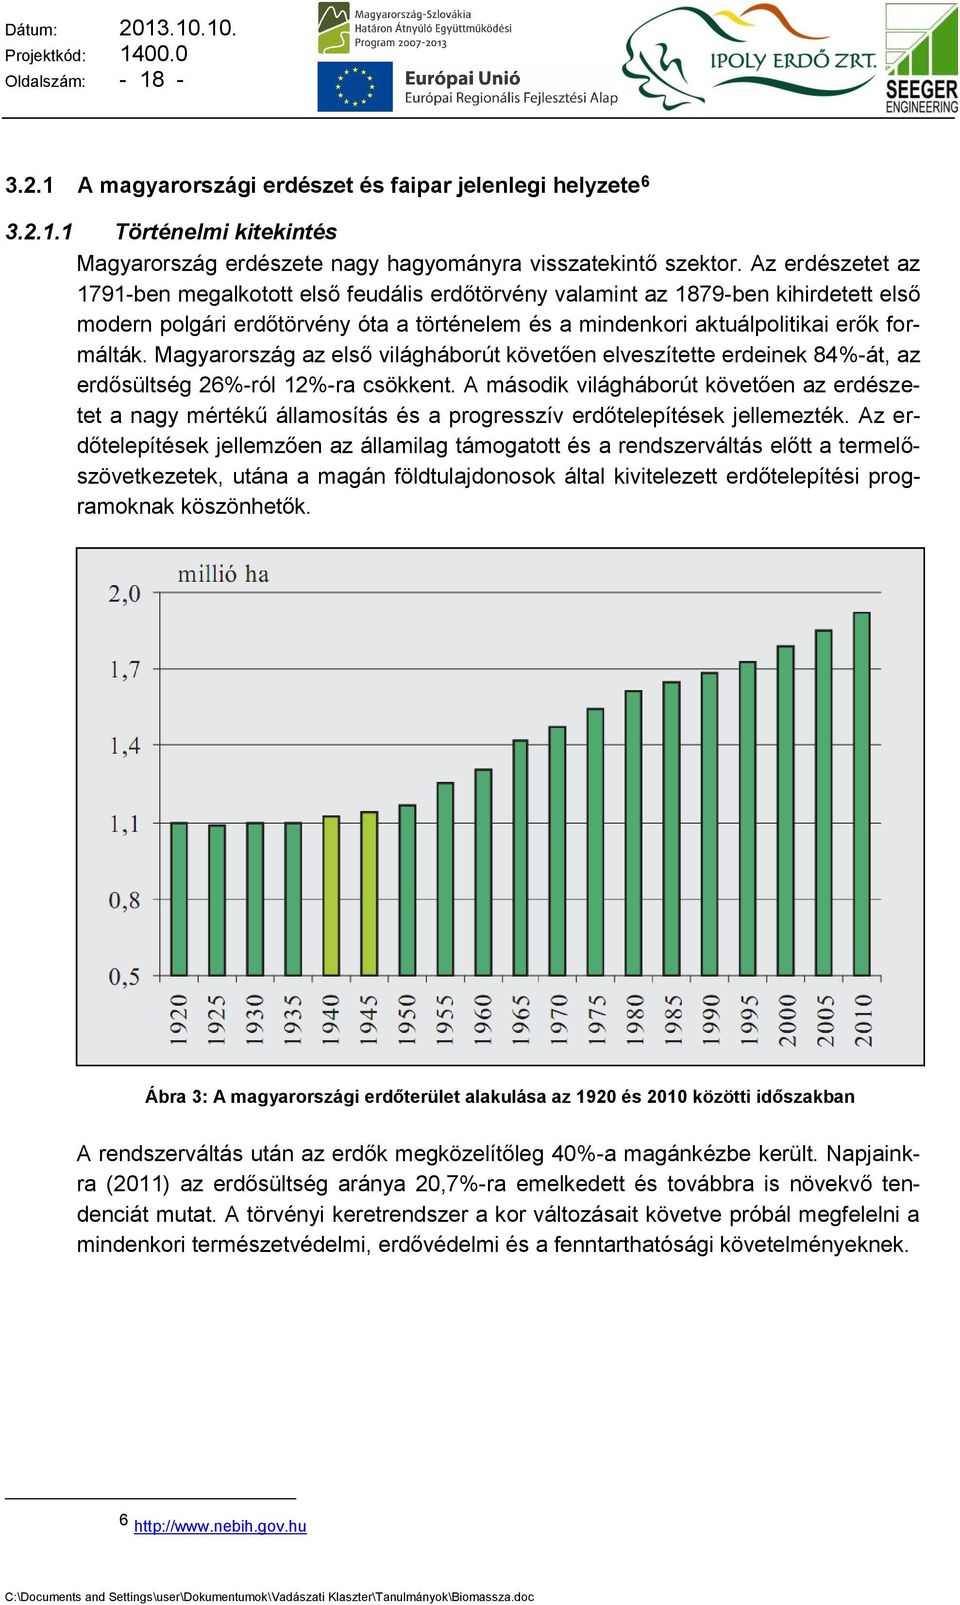 Magyarország az első világháborút követően elveszítette erdeinek 84%-át, az erdősültség 26%-ról 12%-ra csökkent.